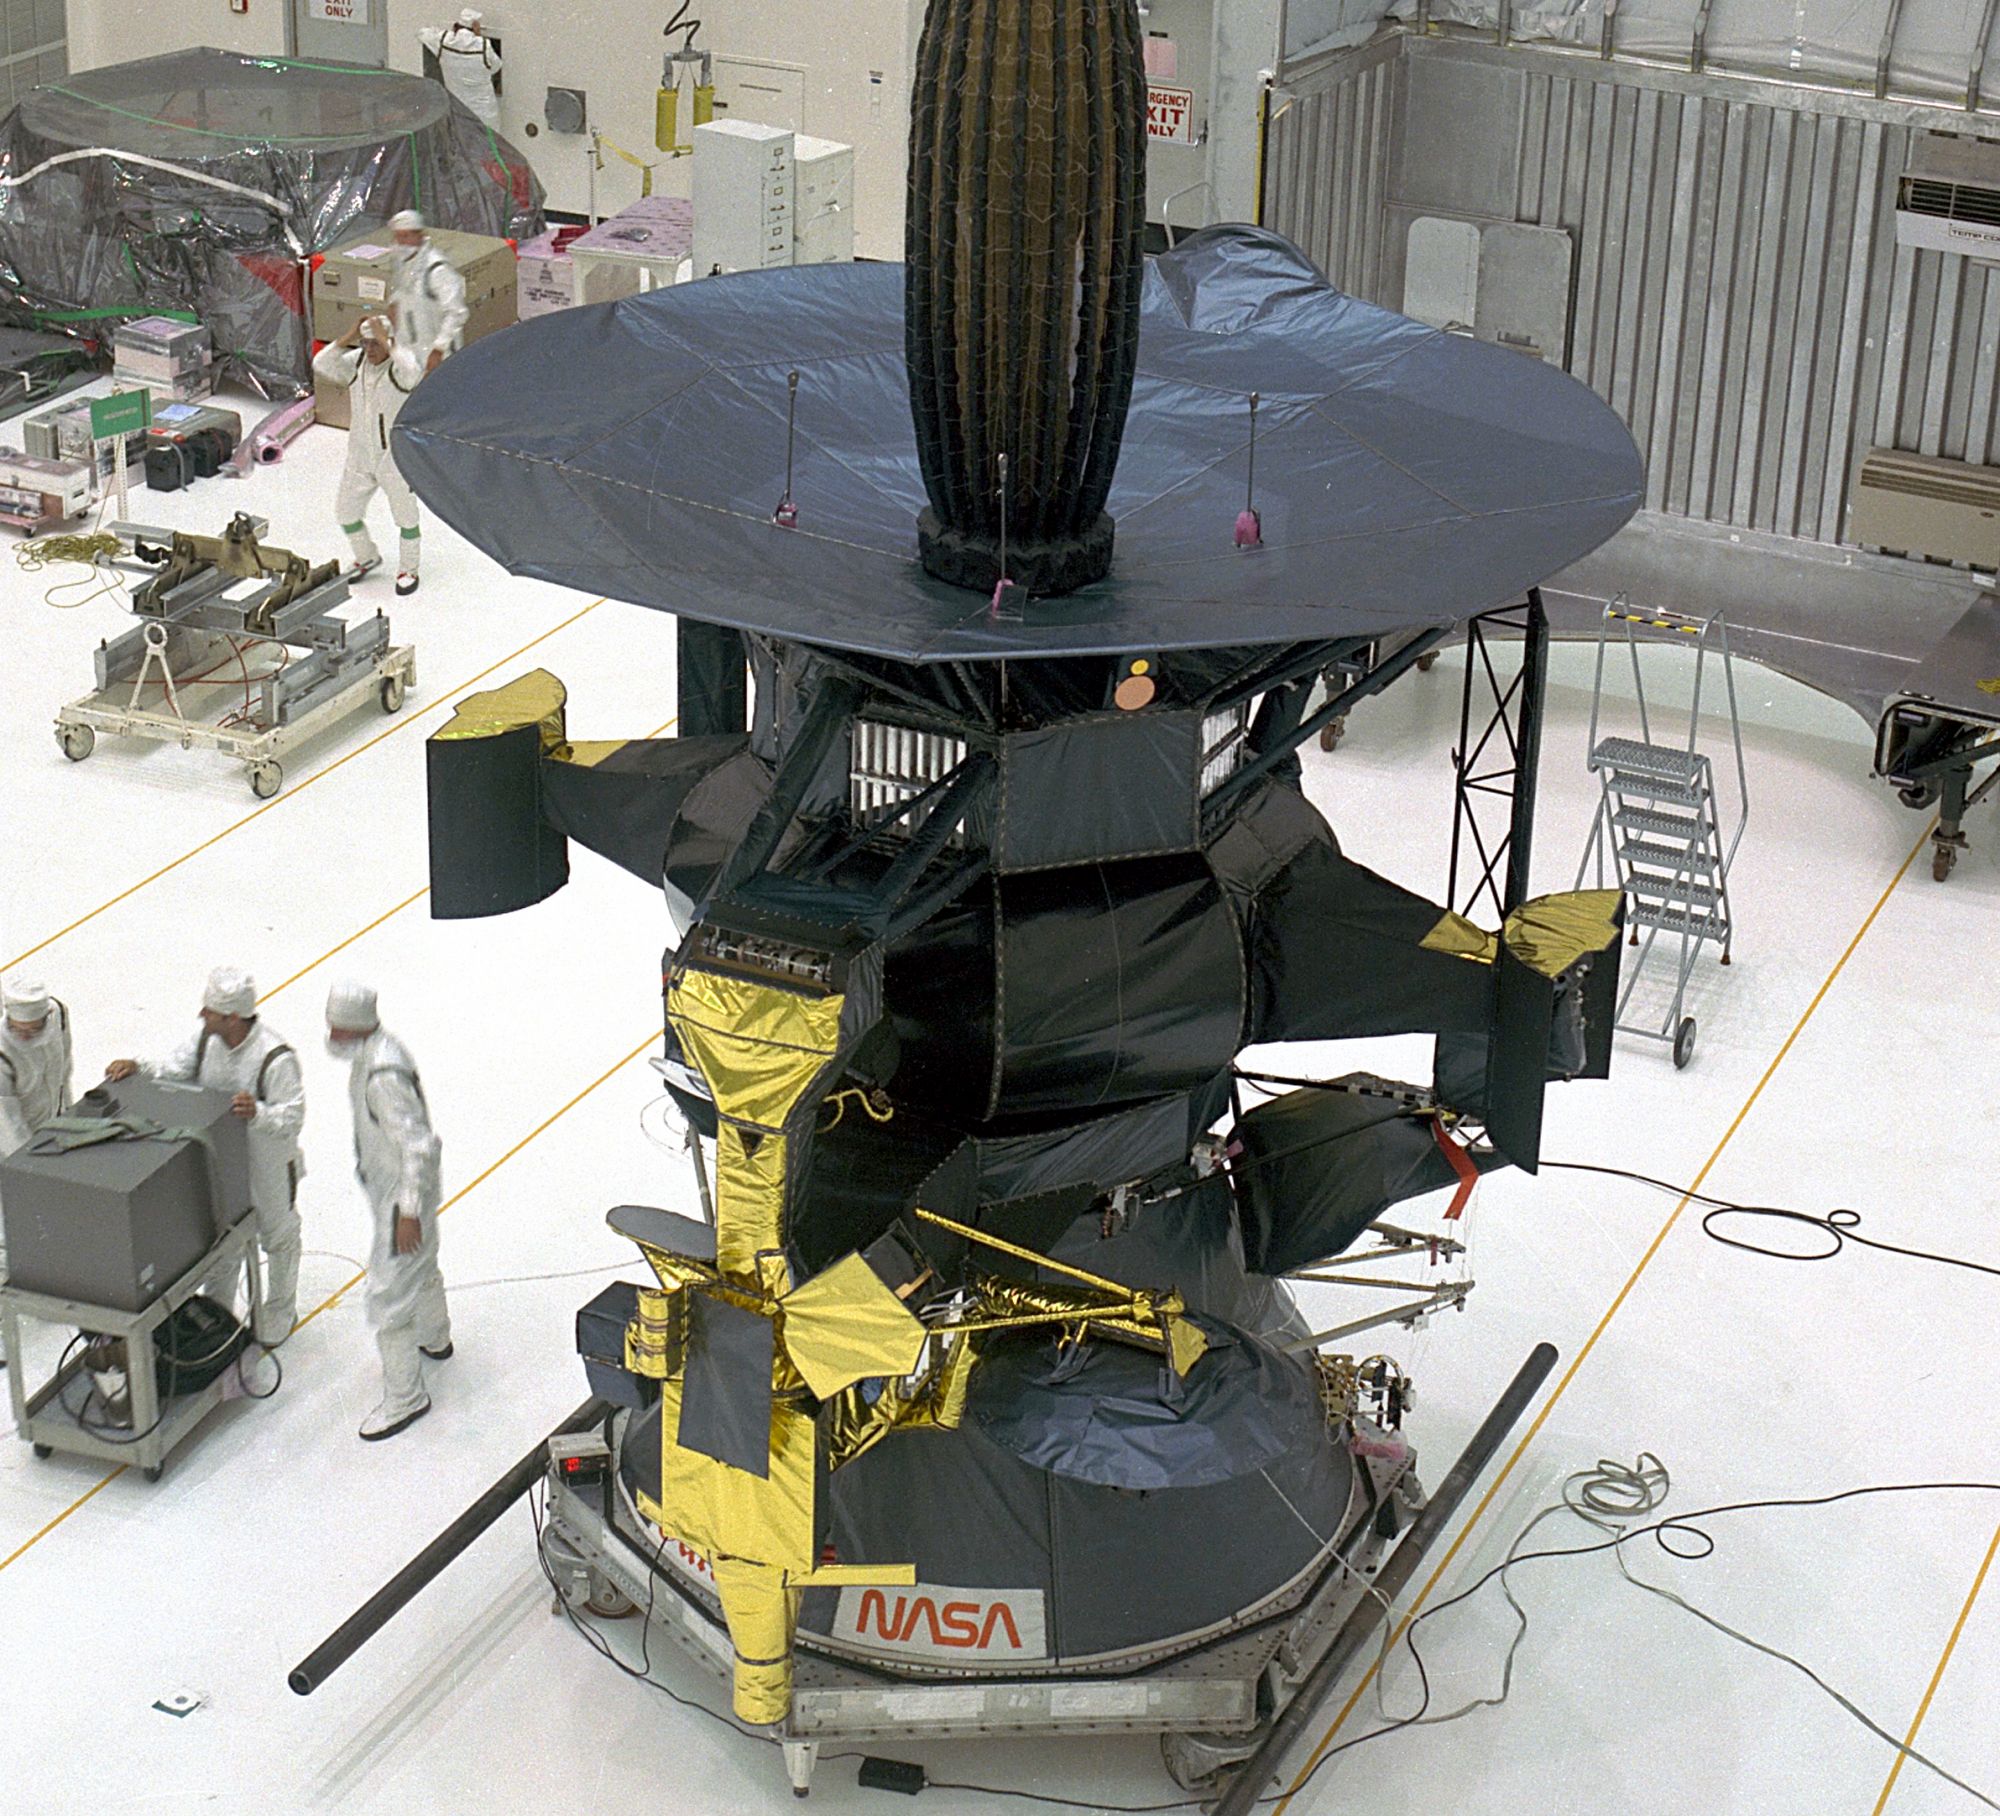 Galileo. Был запущен в 1989 году, а в 1995-м вышел на орбиту Юпитера. За время работы аппарат собрал и отправил на Землю больше 30 Гб данных. Для сохранения информации использовал надежный ленточный накопитель емкостью 114 Мб; впрочем, за время миссии и он несколько раз сбоил